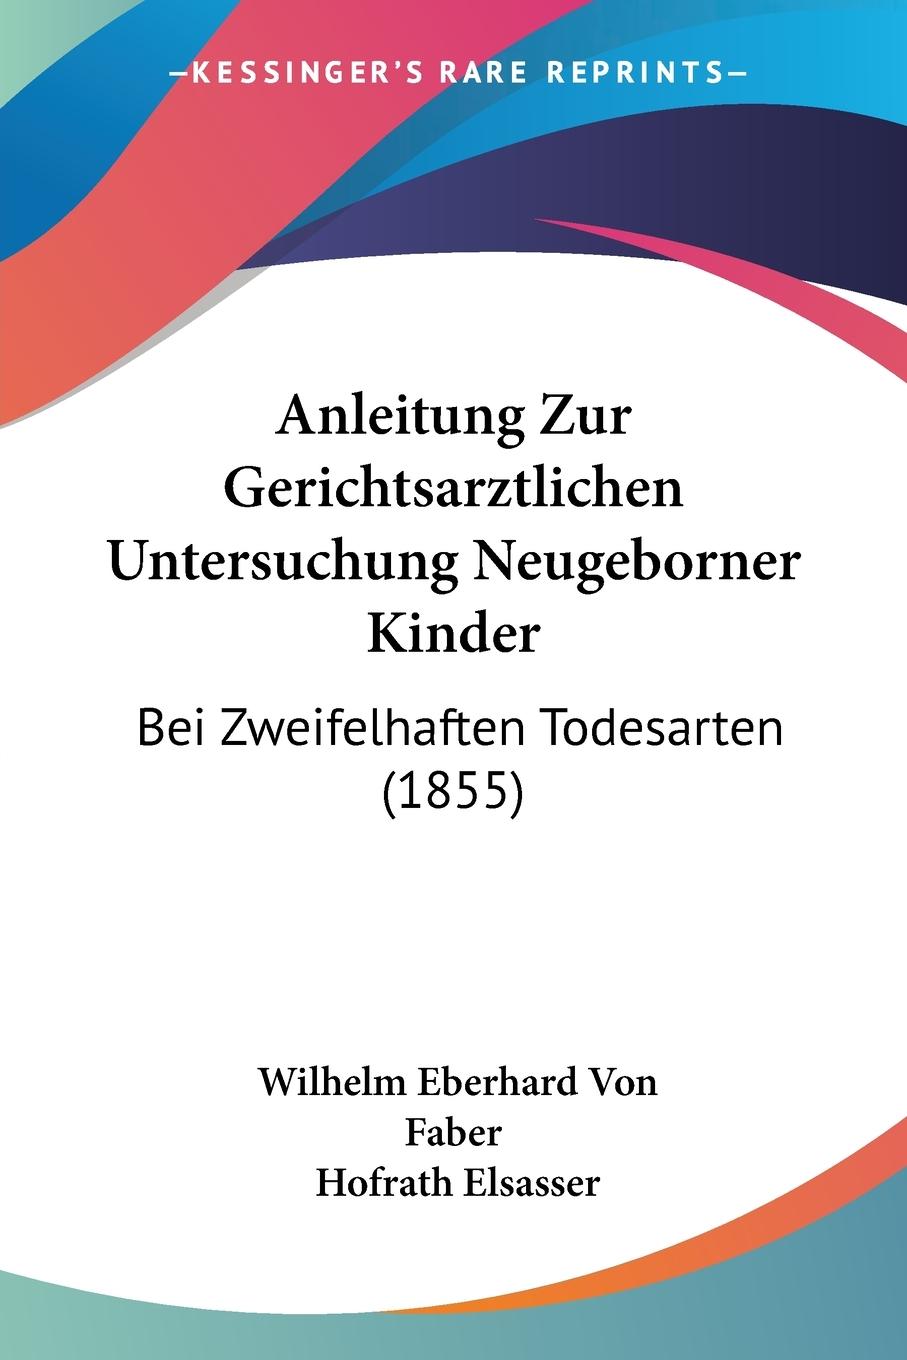 Anleitung Zur Gerichtsarztlichen Untersuchung Neugeborner Kinder - Faber, Wilhelm Eberhard Von